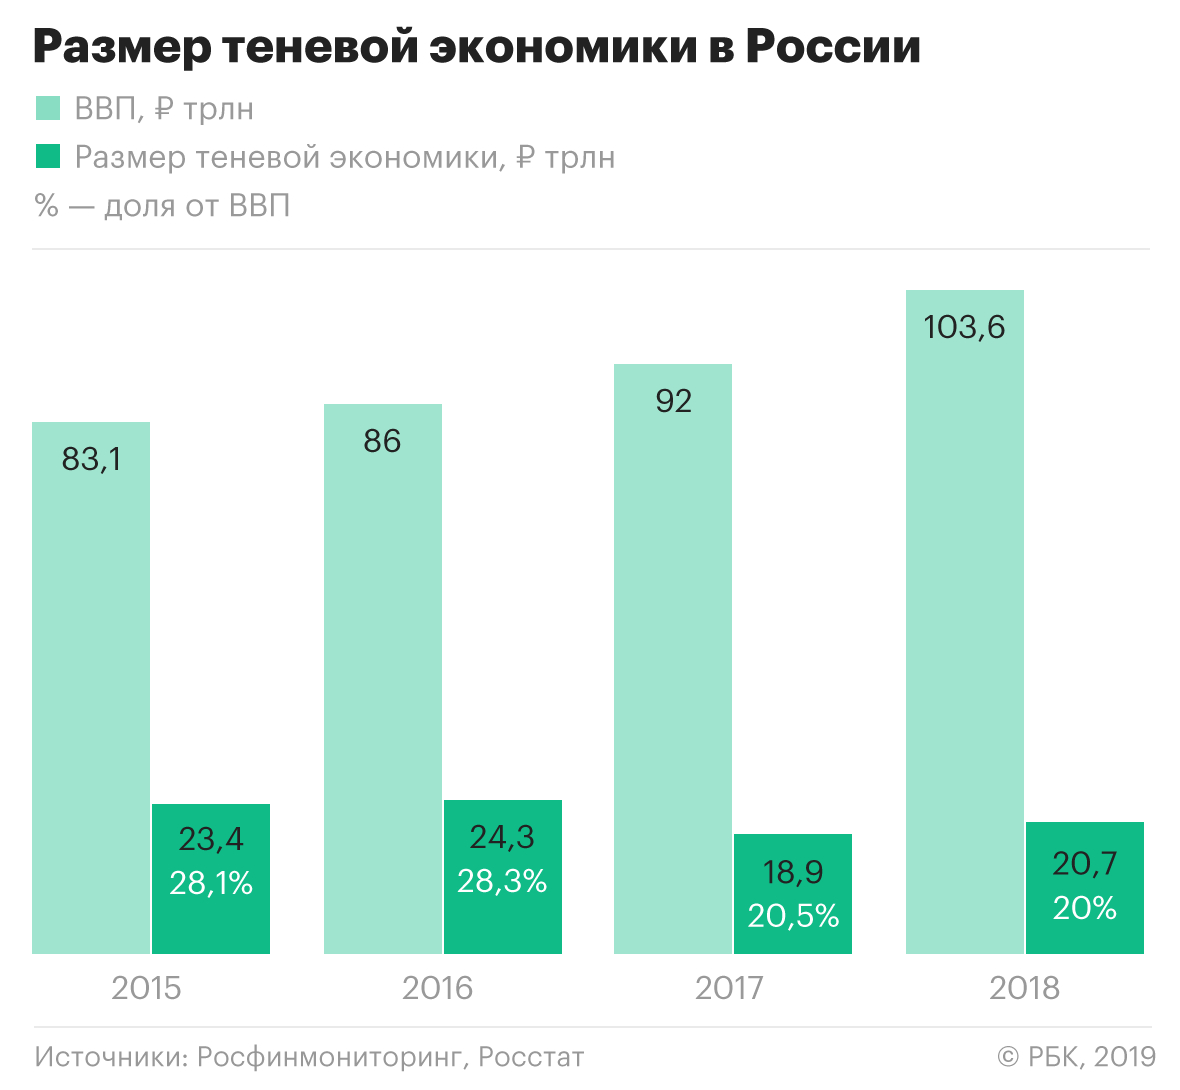 Финансовая разведка оценила в ₽20 трлн объем теневой экономики в России